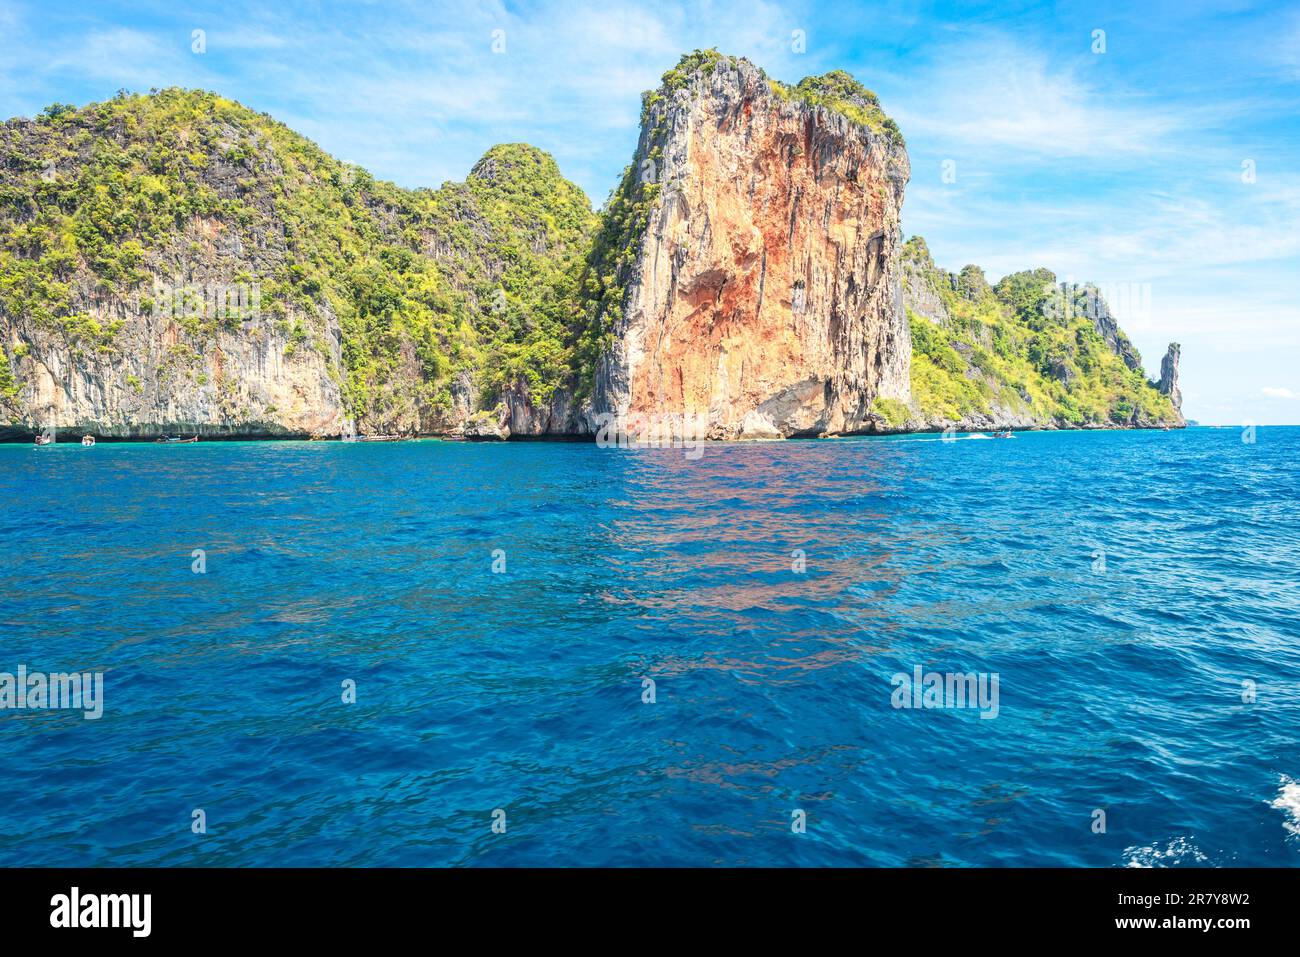 Ko Phi Phi le est la deuxième plus grande île de l'archipel des îles Phi Phi. L'île se compose d'un anneau de collines calcaires abruptes Banque D'Images